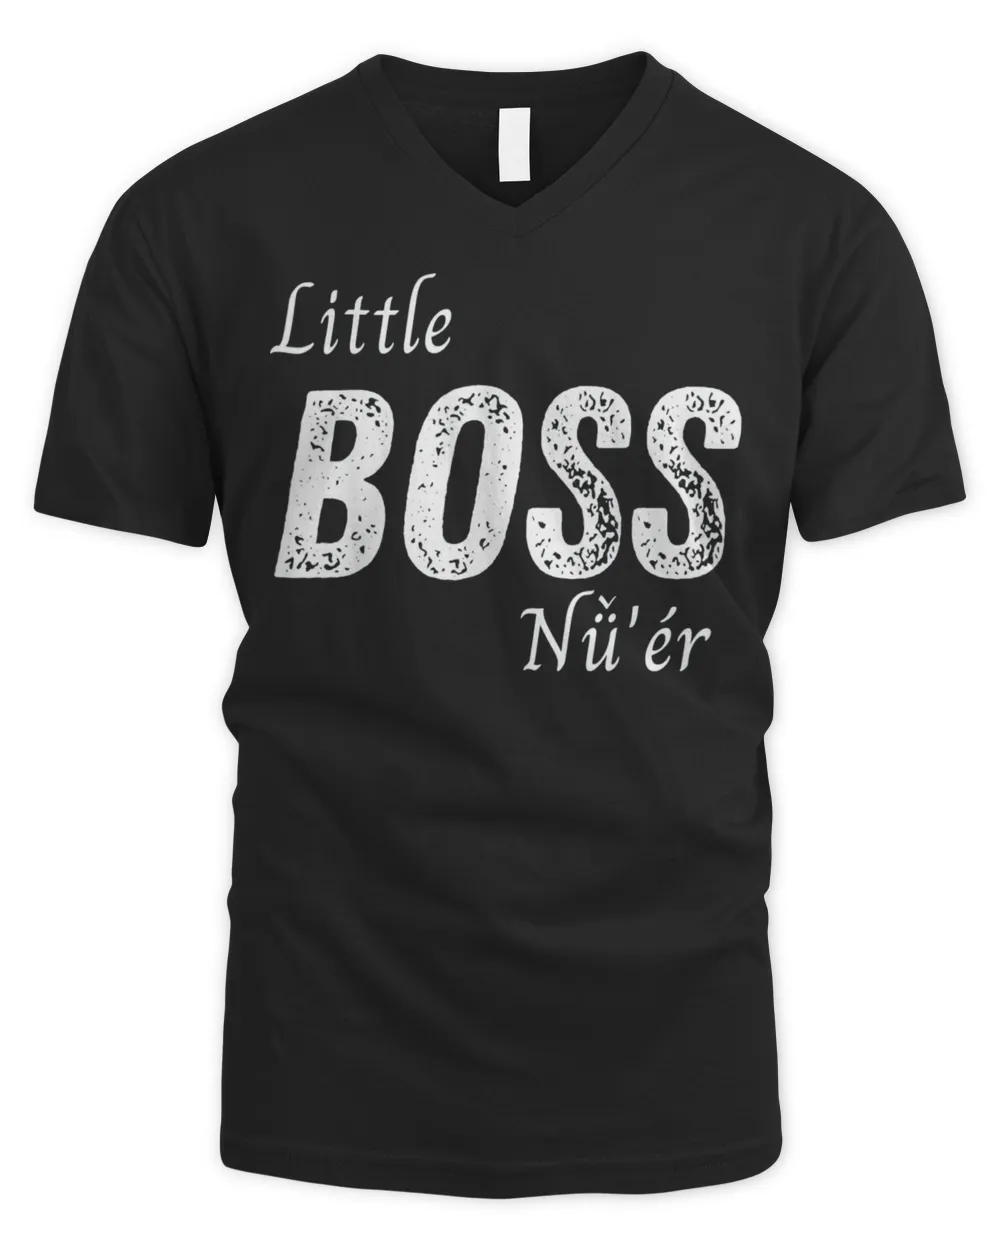 Little Boss Daughter Nu’er Girl Toddler Chinese Matching T-Shirt